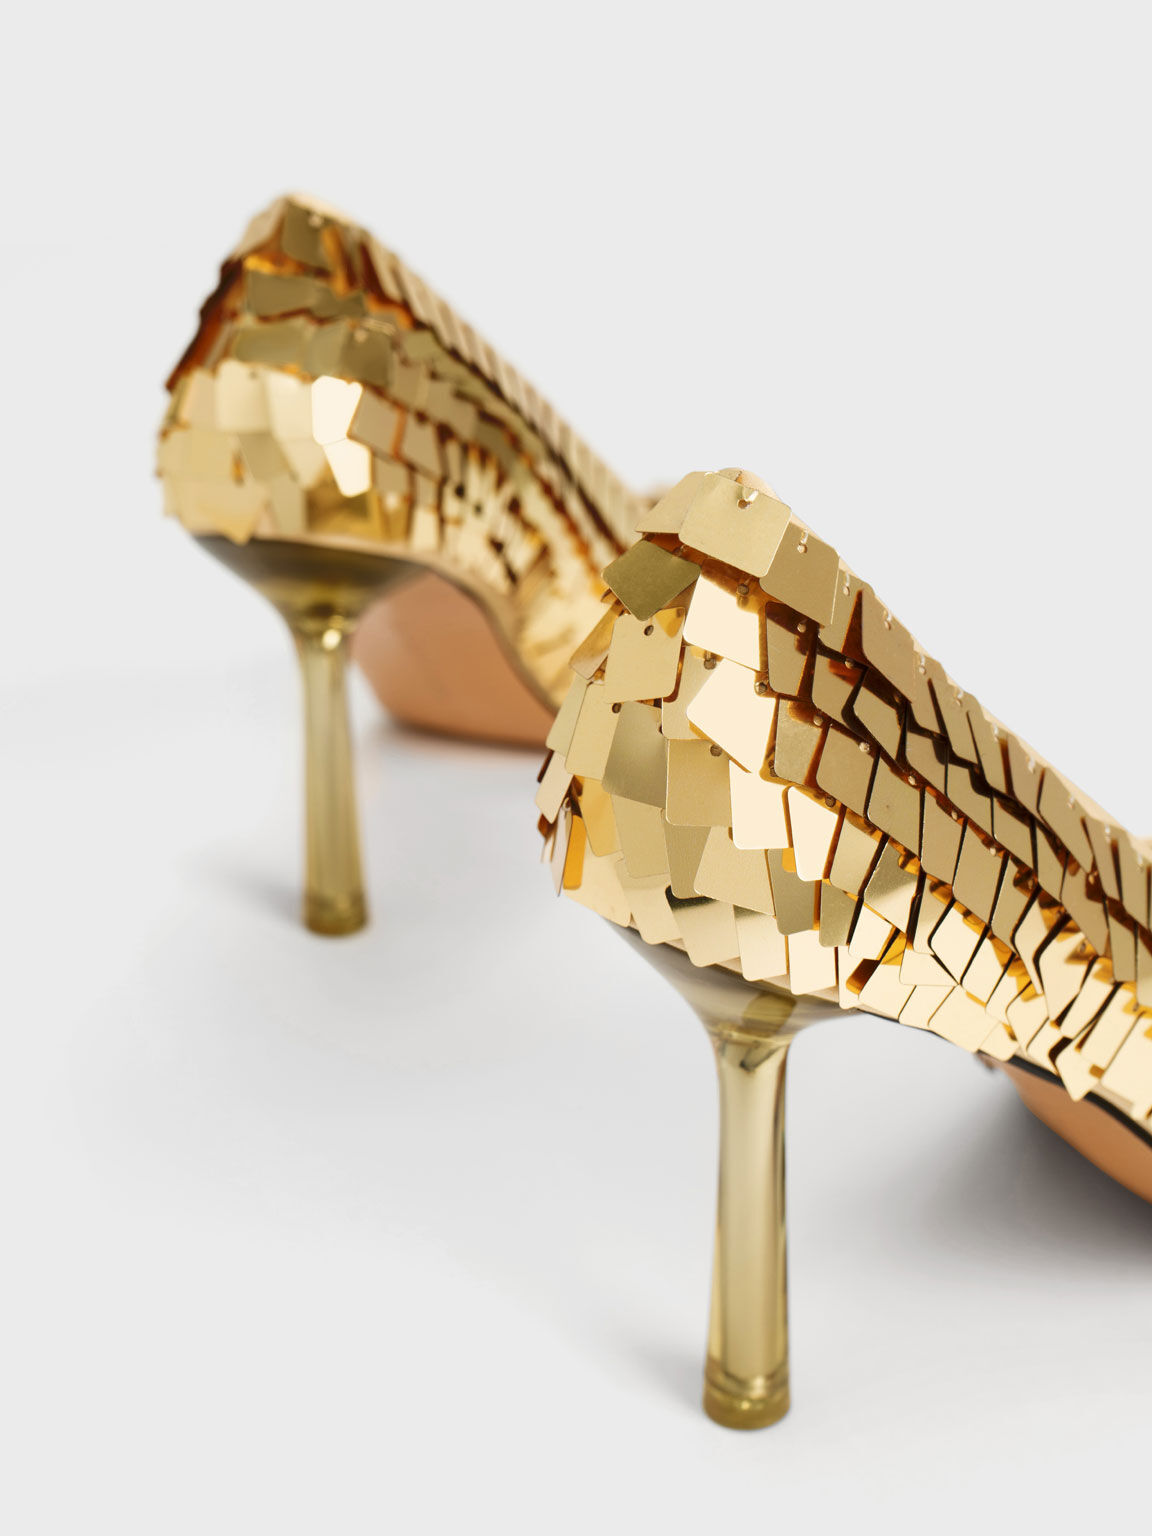 Sepatu Pumps Heel Sequinned Stiletto, Gold, hi-res